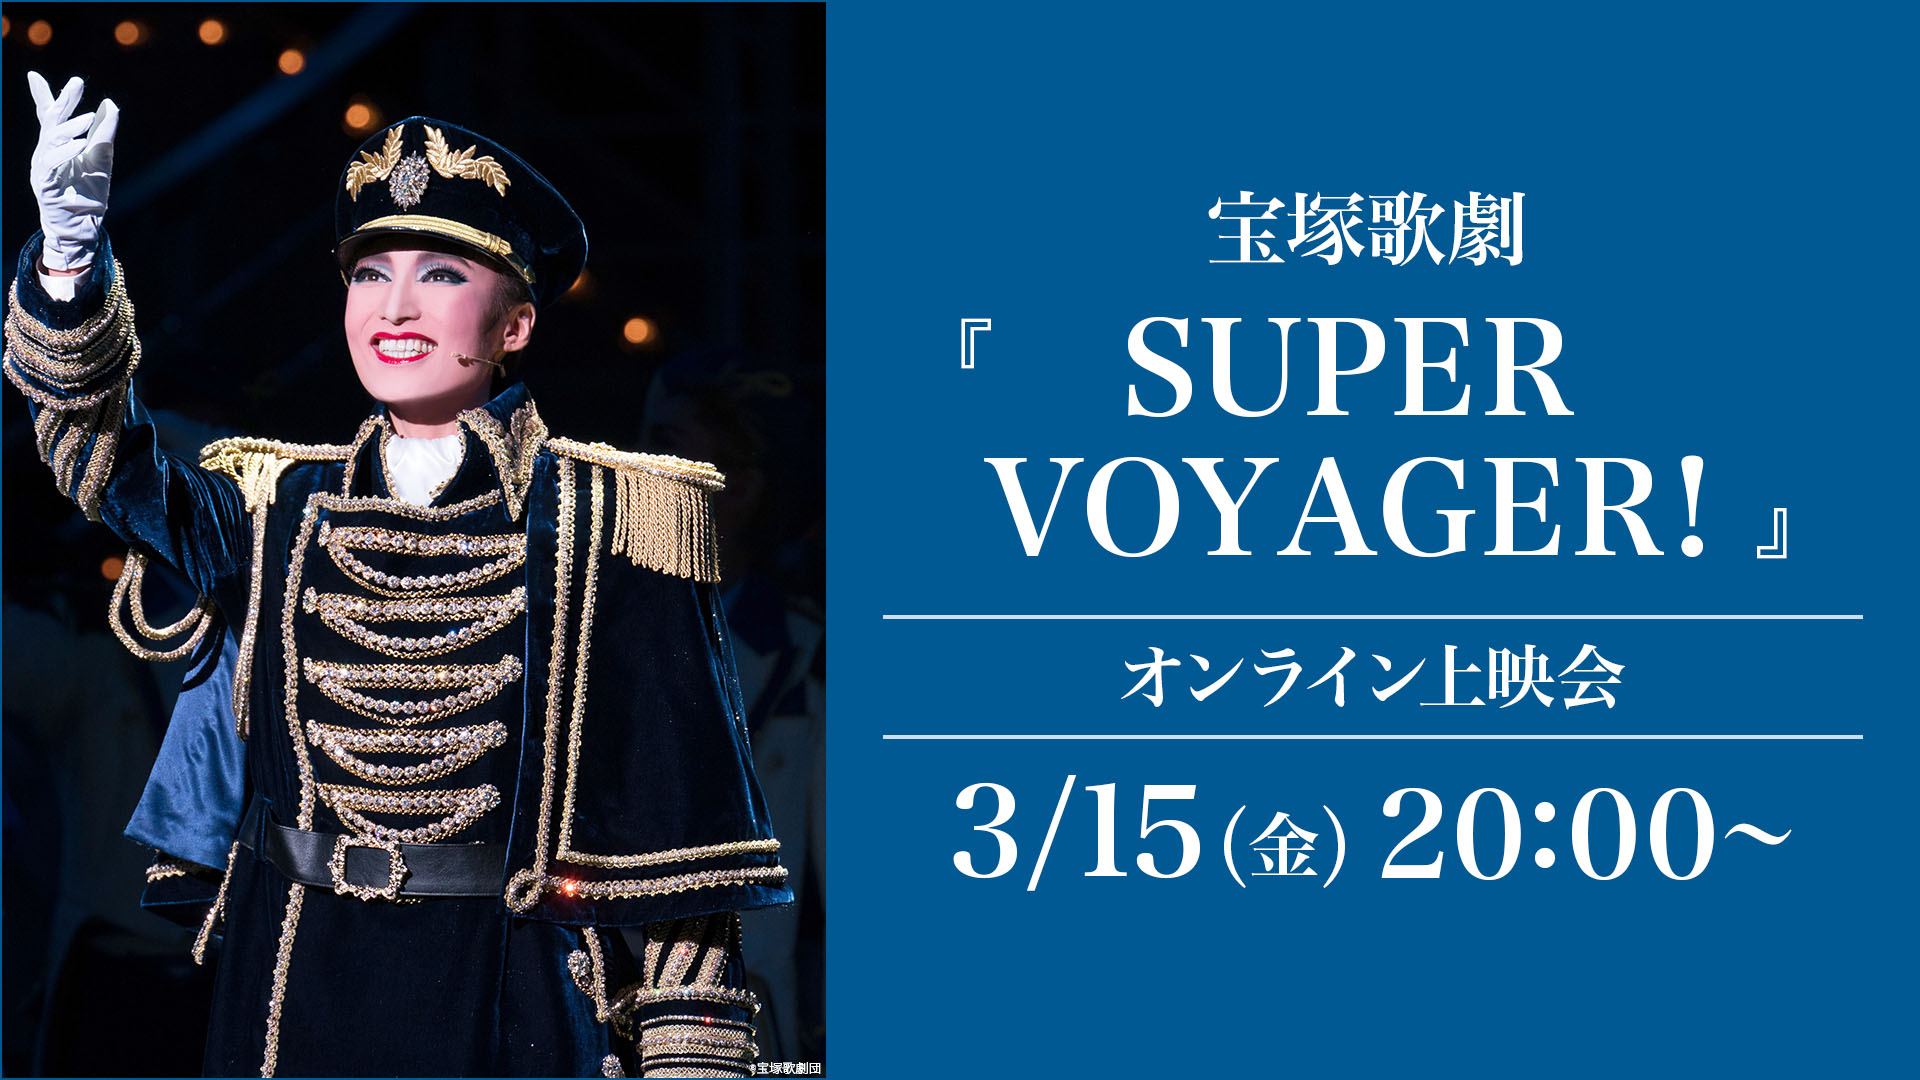 宝塚歌劇『SUPER VOYAGER!』（'18年雪組・東京・千秋楽）オンライン 